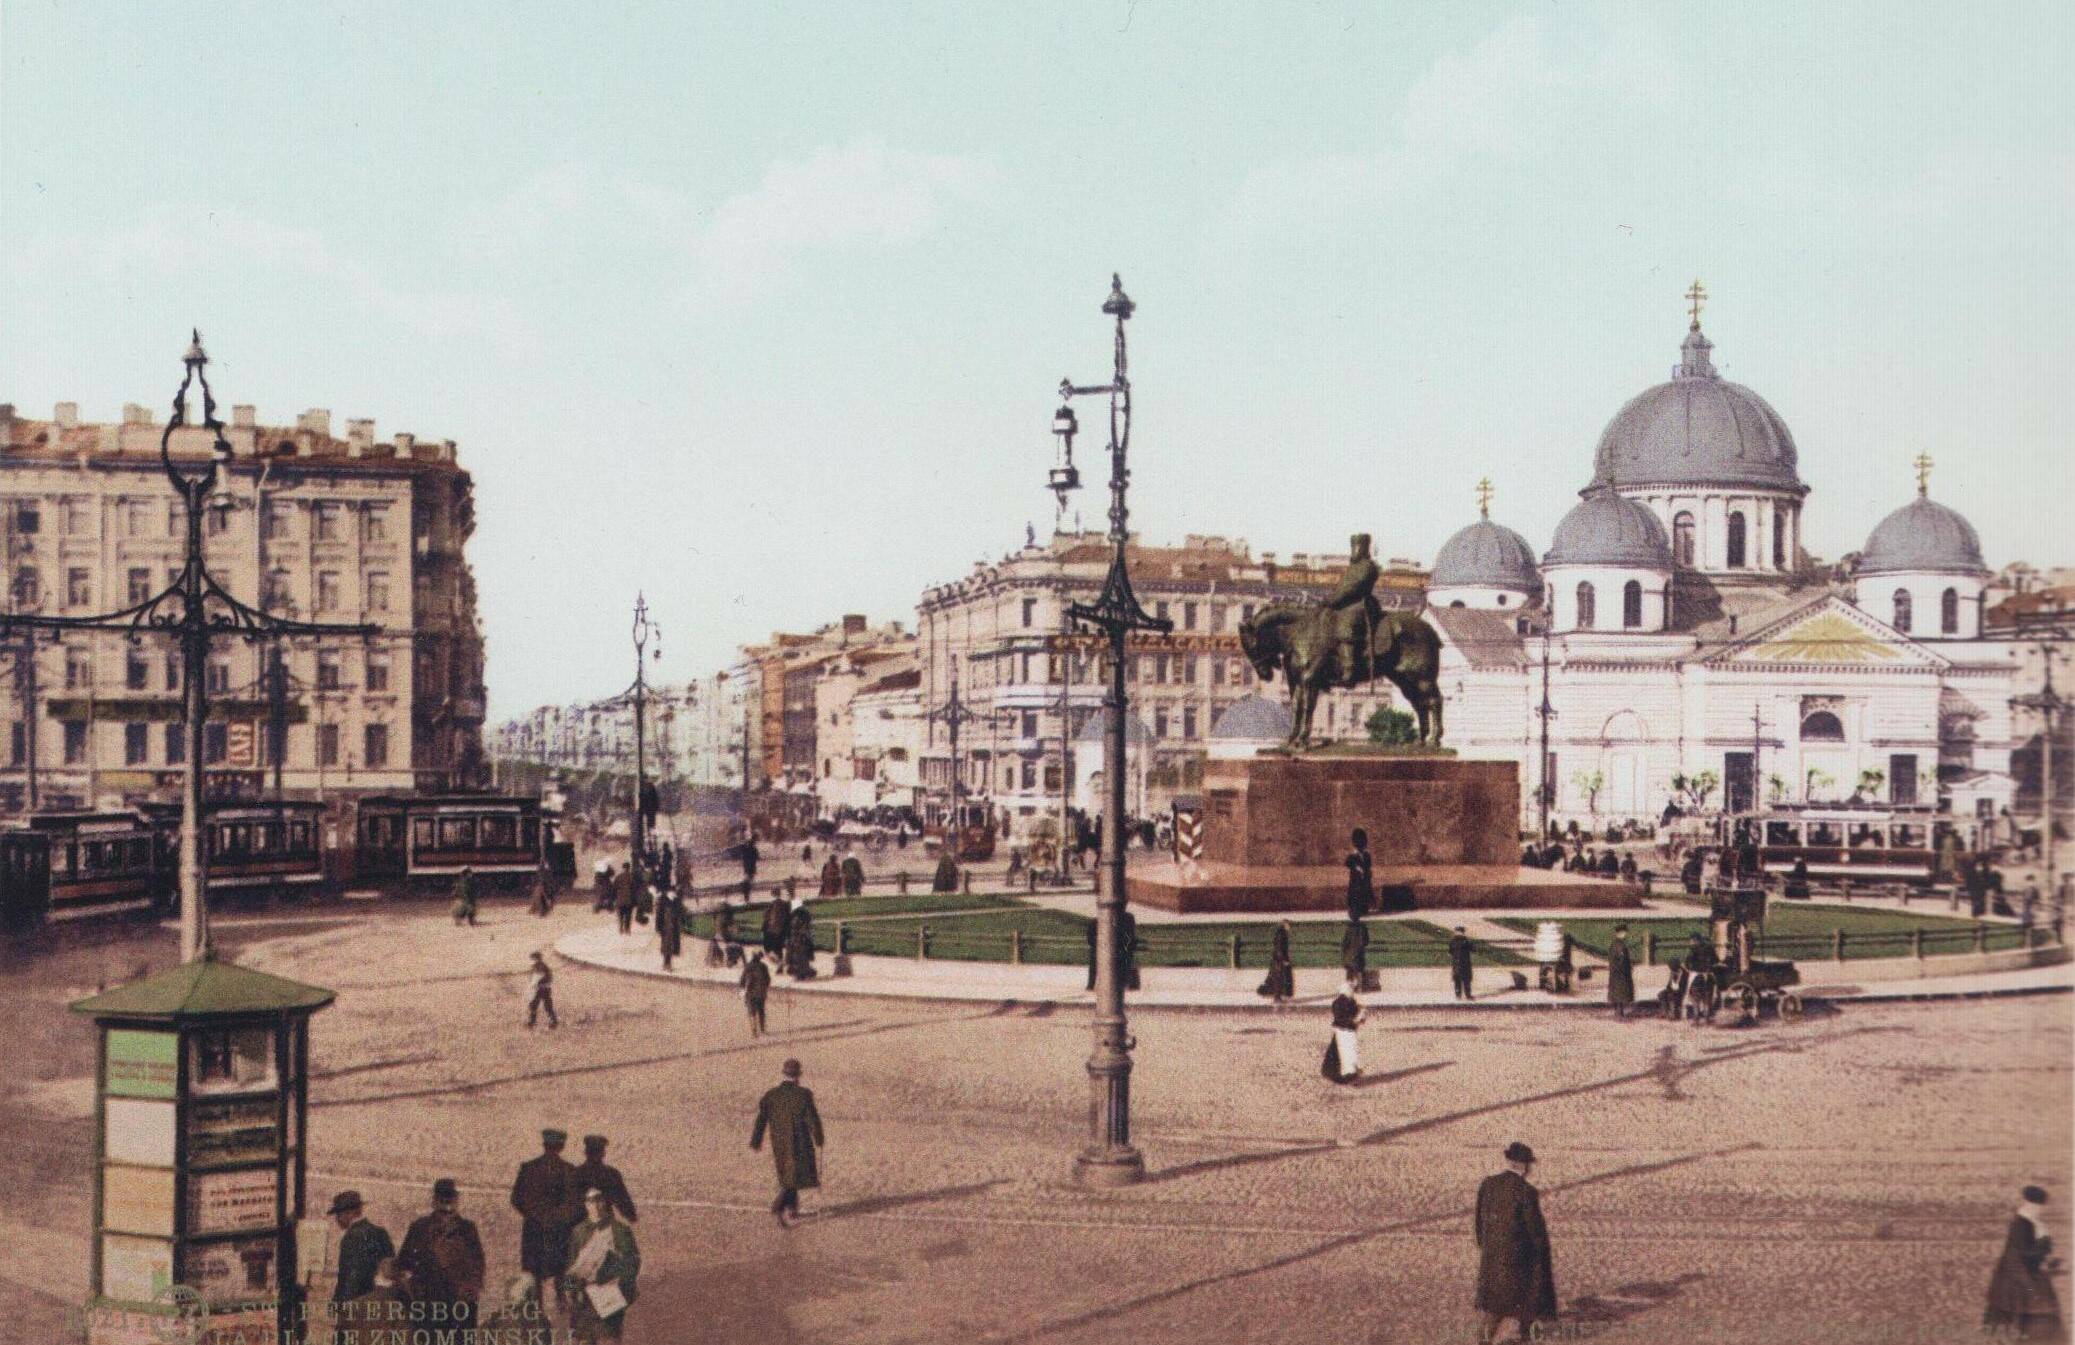 Вид Знаменской площади с памятником Александру III.